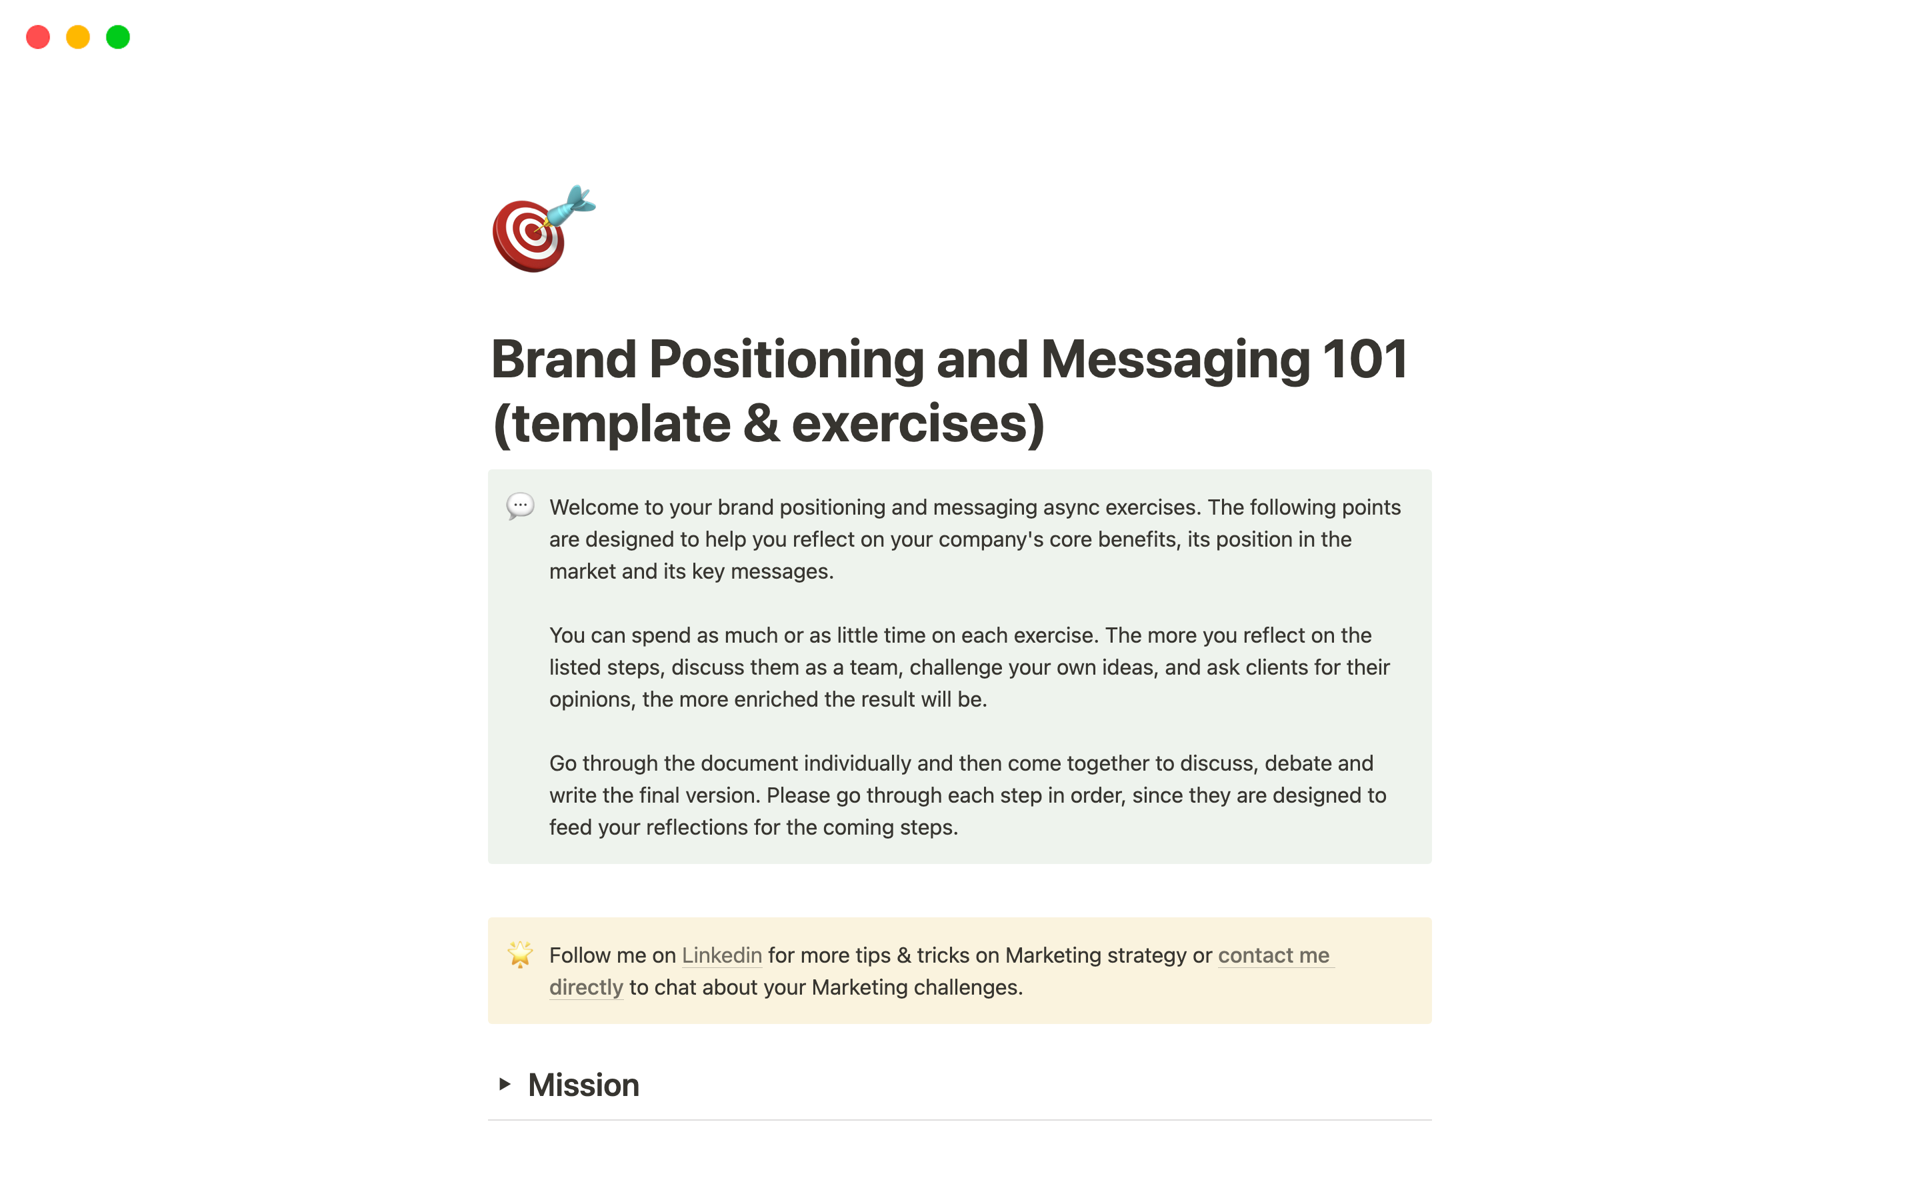 Vista previa de una plantilla para Brand Positioning and Messaging 101 (template & exercises)